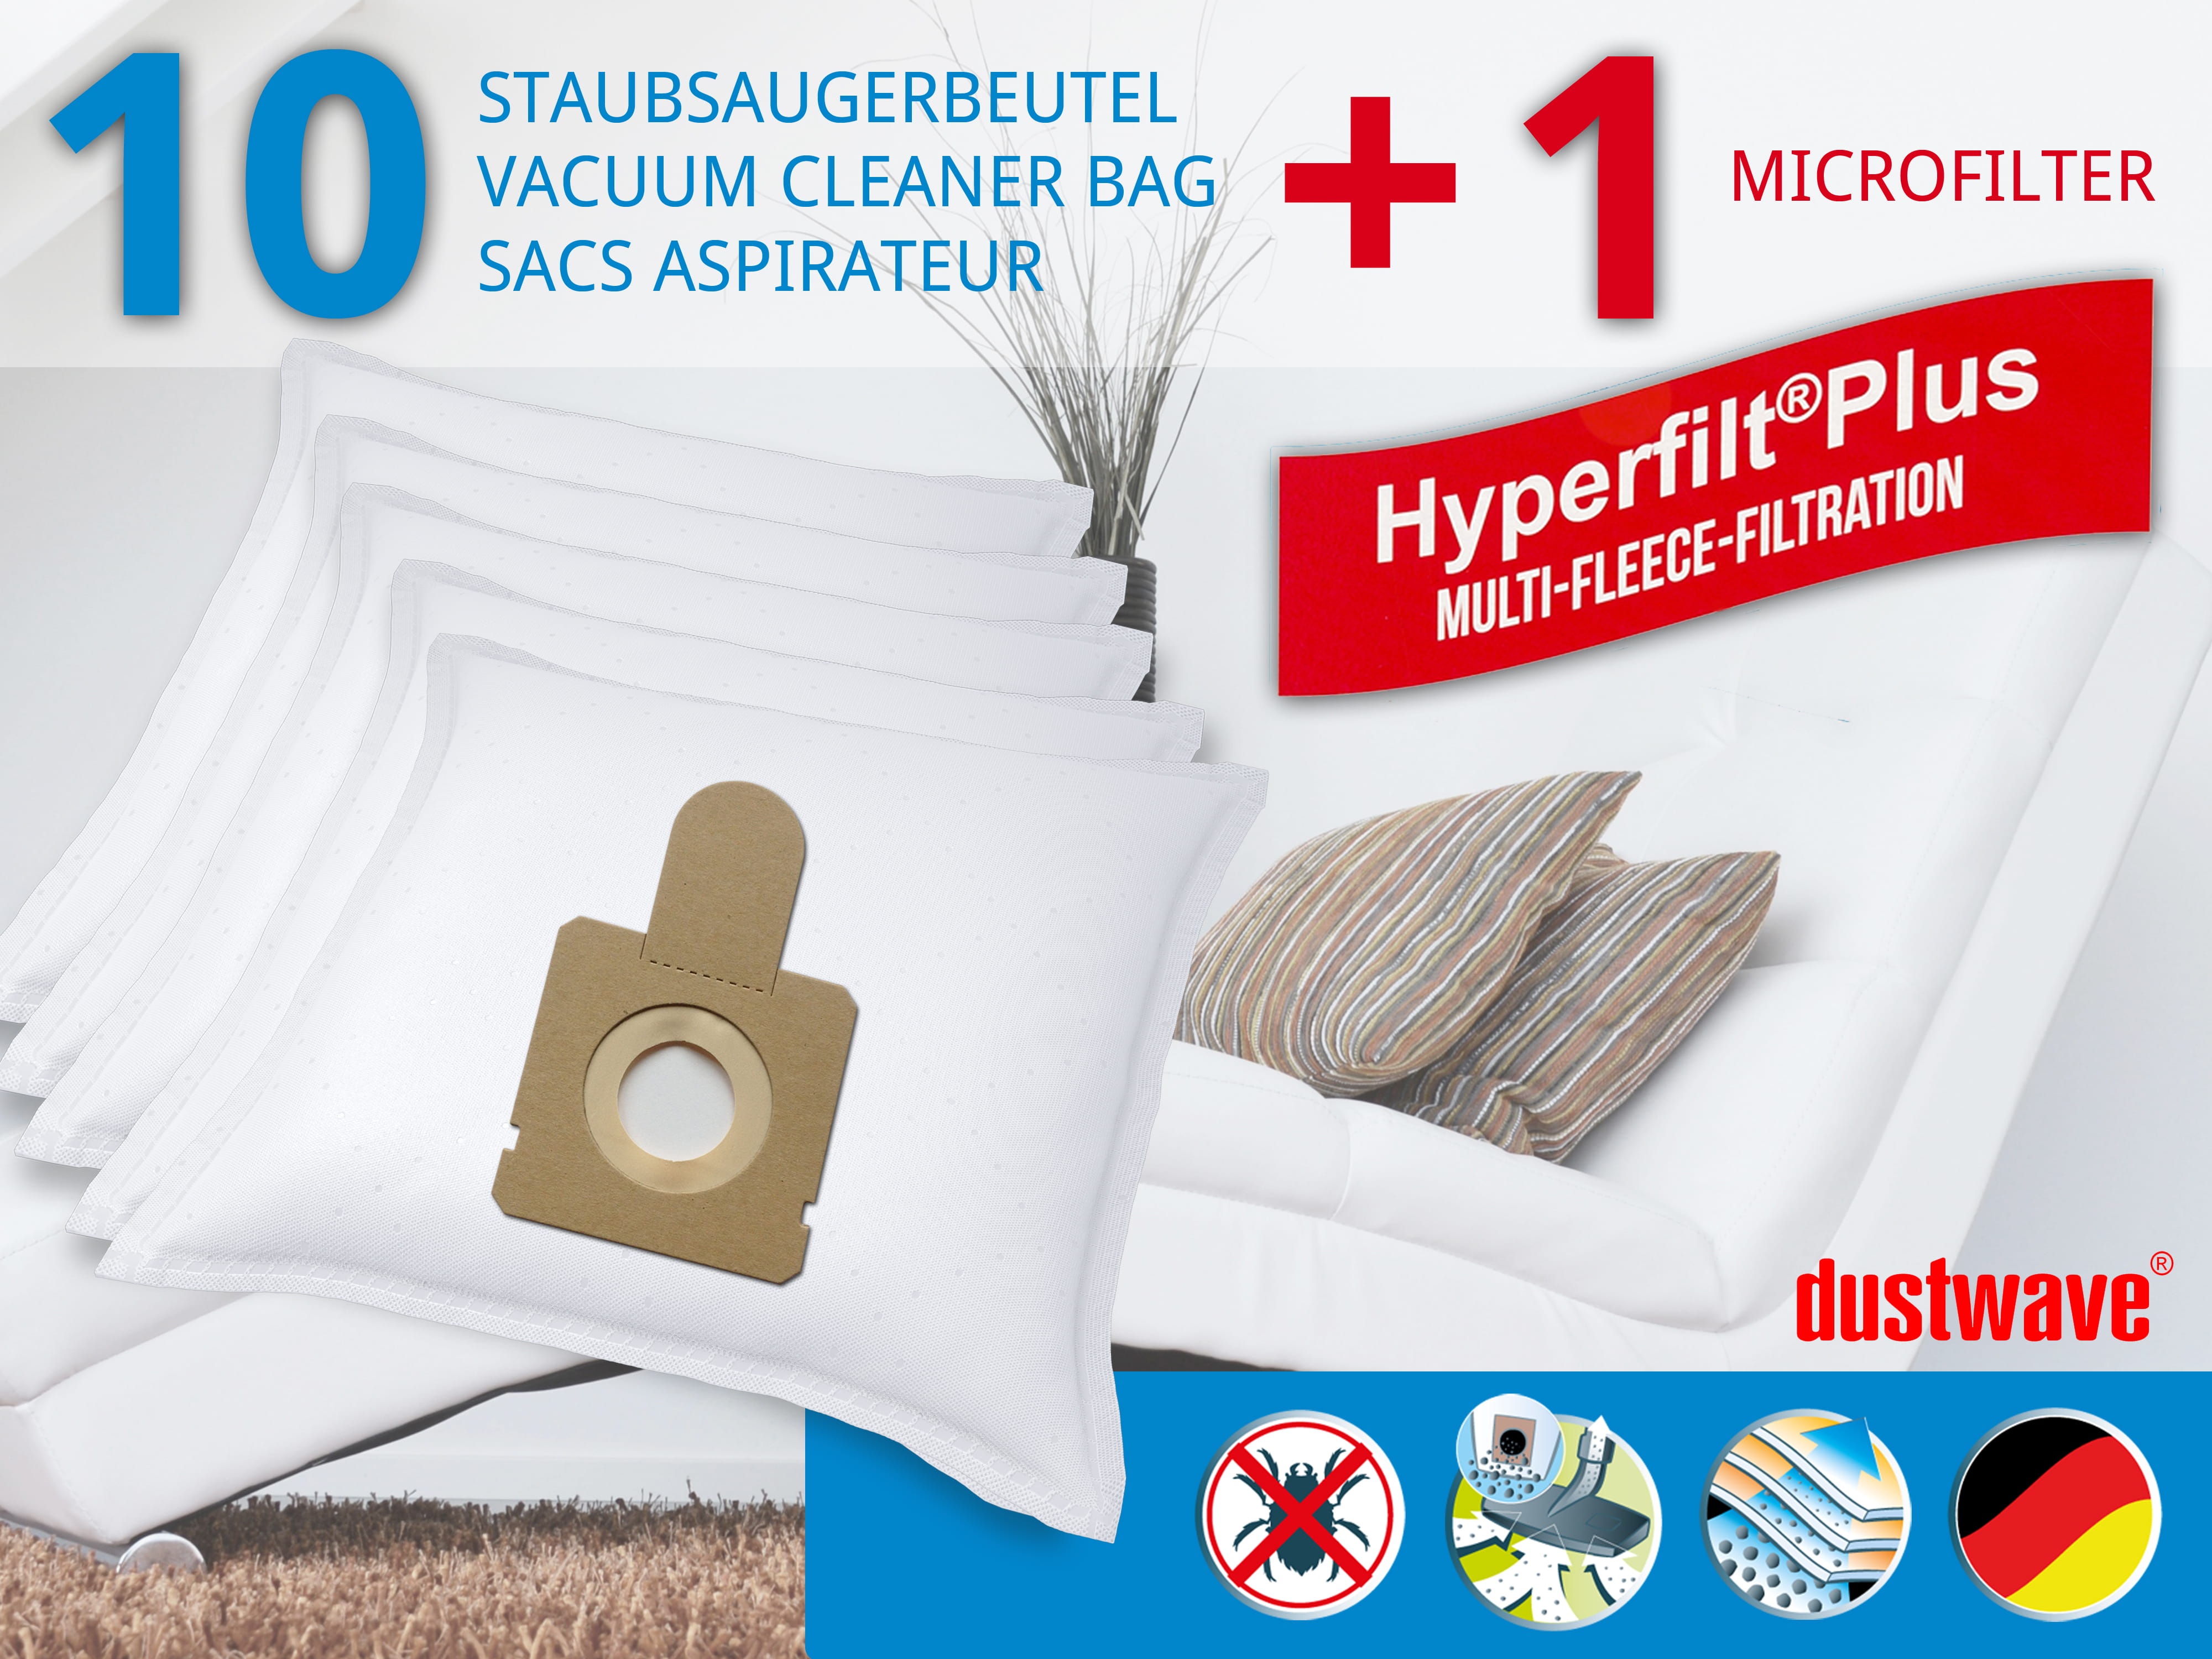 Dustwave® 10 Staubsaugerbeutel für Hoover TCP2010 - hocheffizient, mehrlagiges Mikrovlies mit Hygieneverschluss - Made in Germany